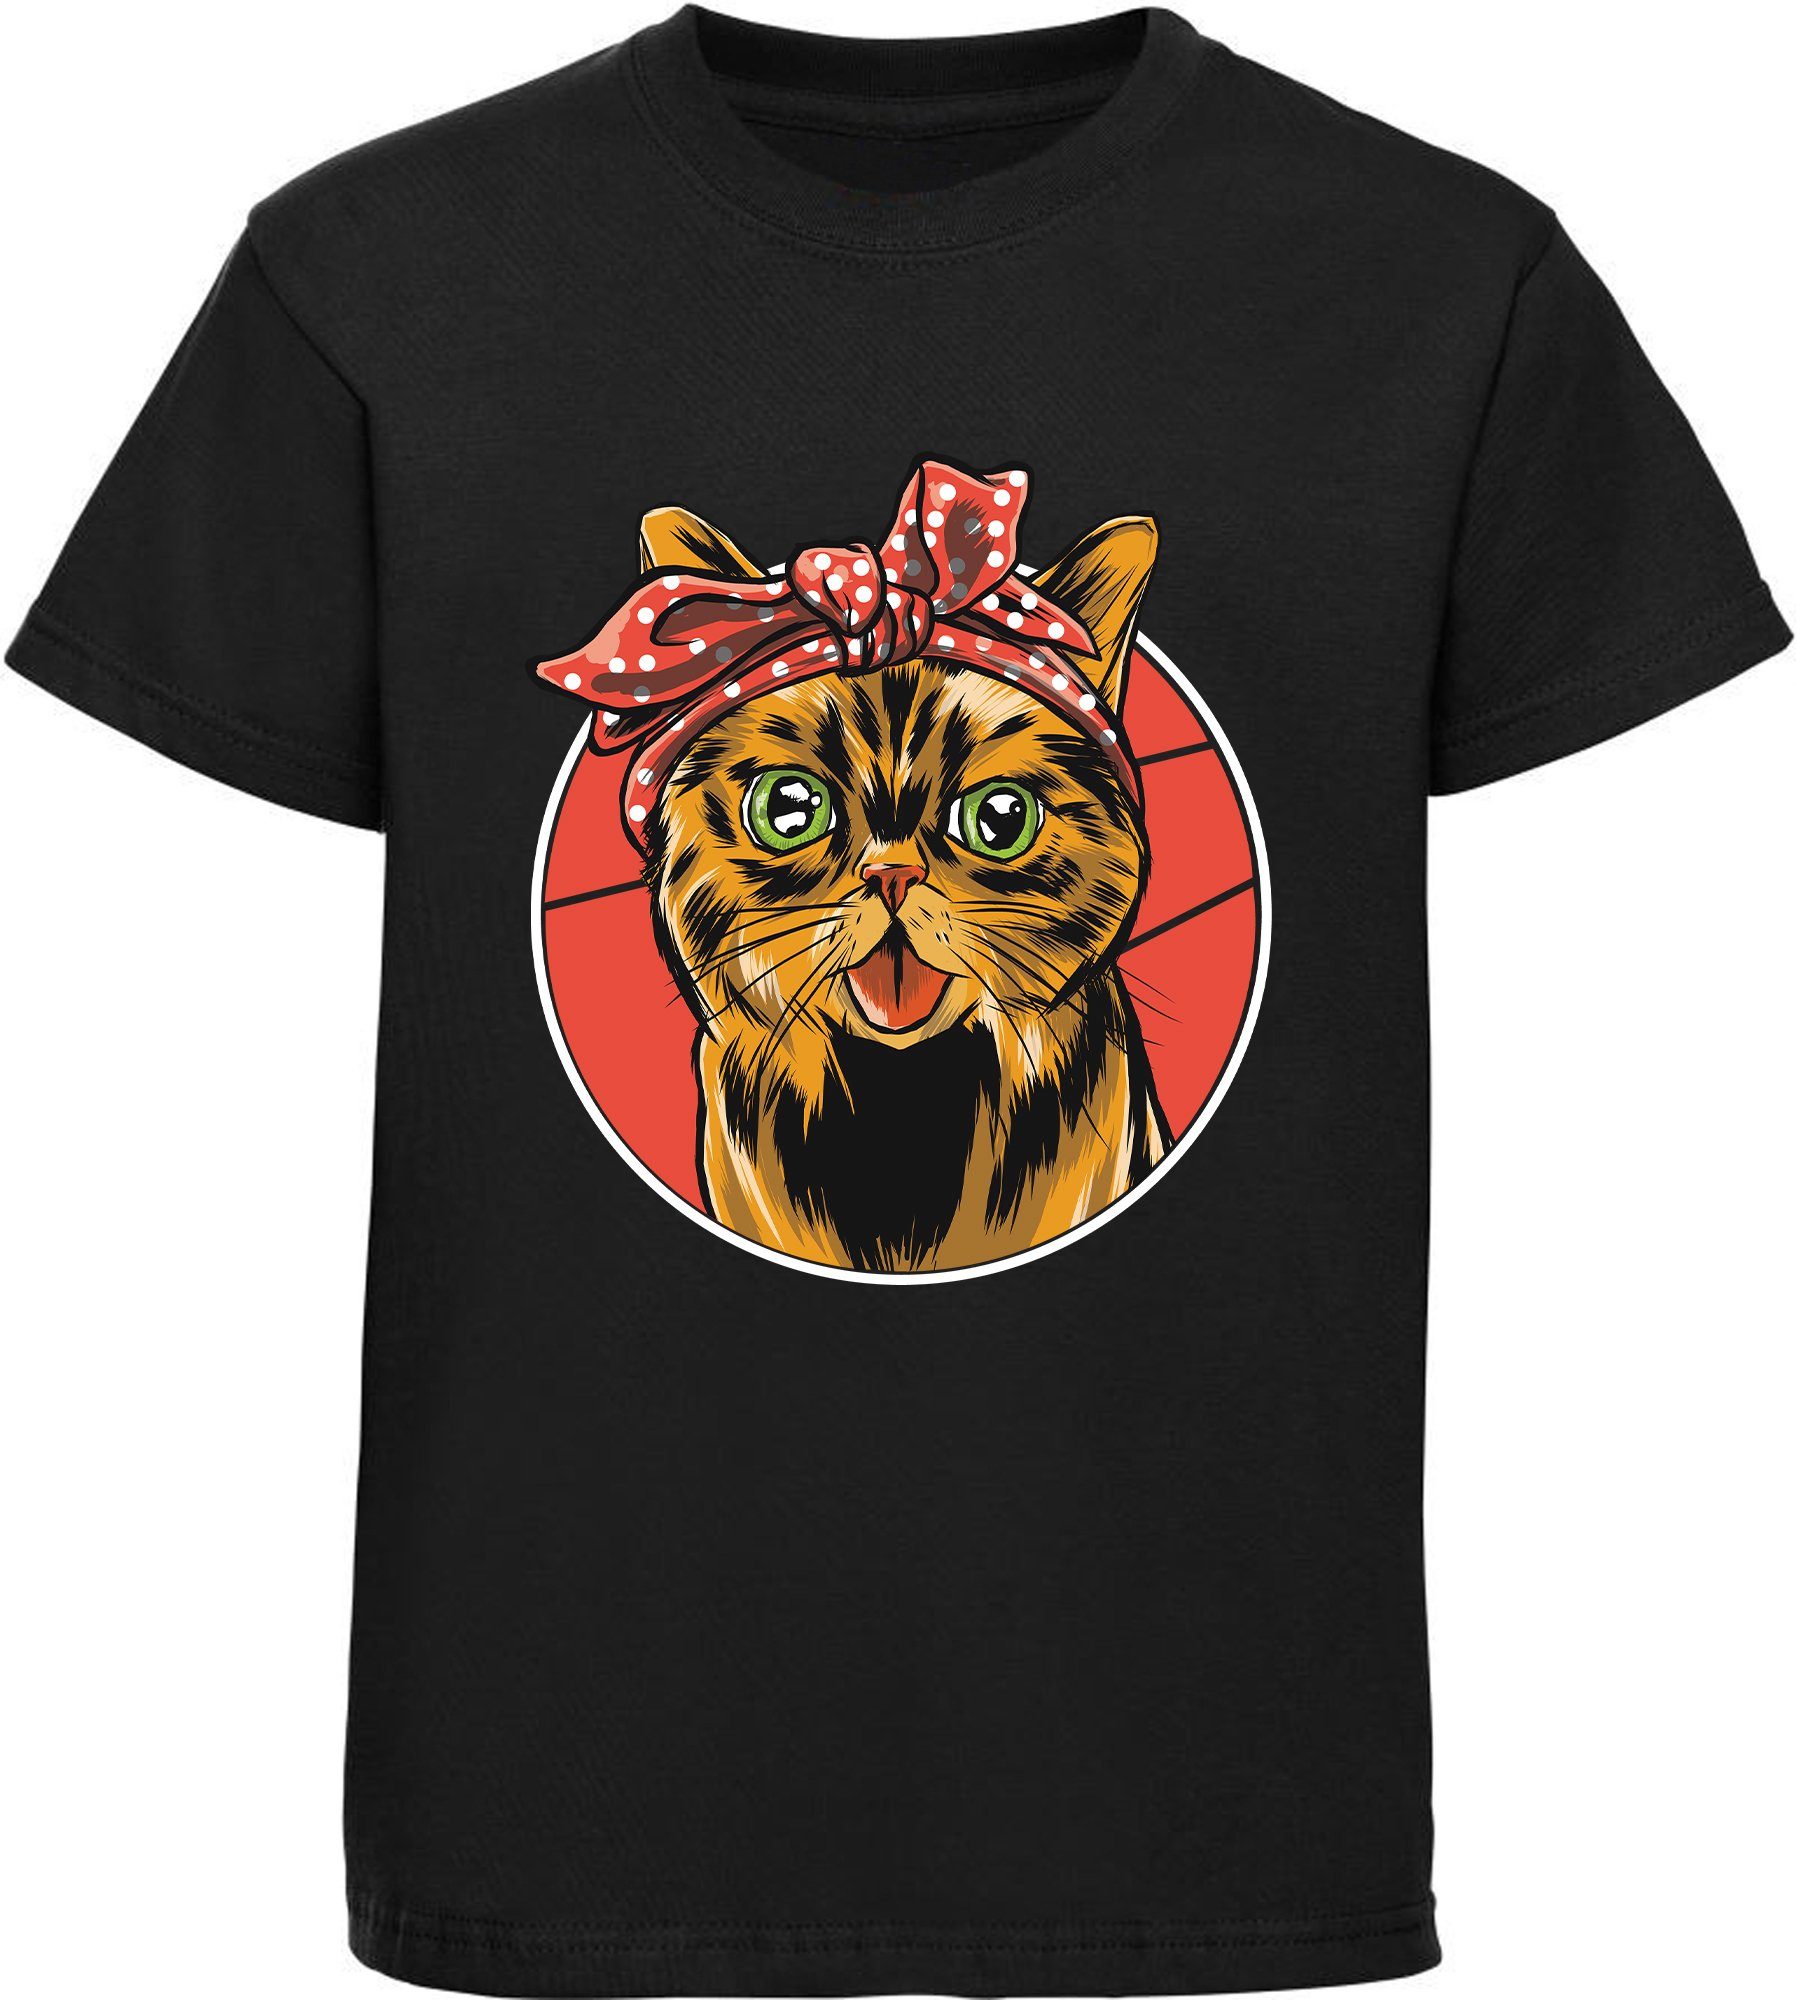 MyDesign24 Print-Shirt bedrucktes schwarz, Katze Katze, T-Shirt i103 mit Kinder Baumwollshirt Schleife Mädchen weiß, rosa, rot, mit